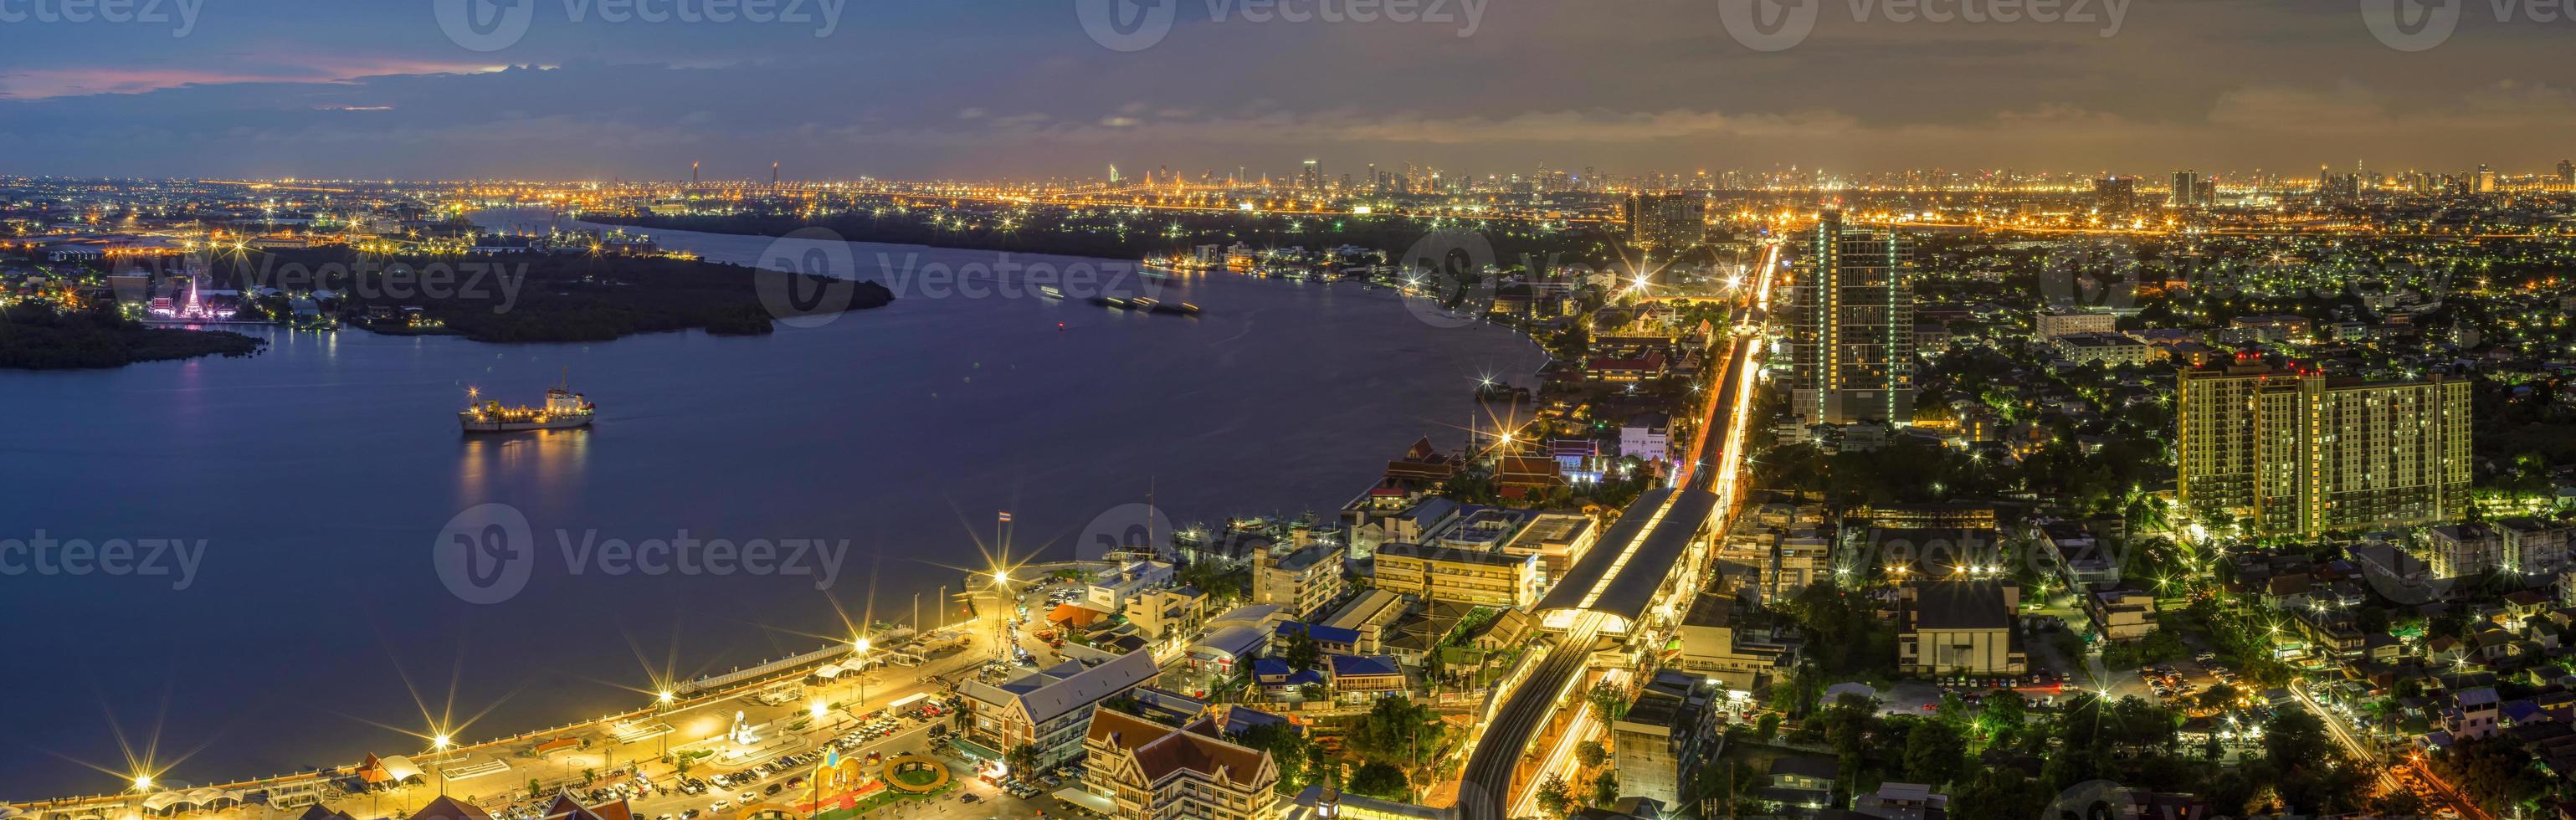 luces panorámicas de las calles y luces de las casas residenciales en los suburbios durante la puesta de sol, tráfico de vehículos de tráfico de barcos en samut prakan, tailandia foto